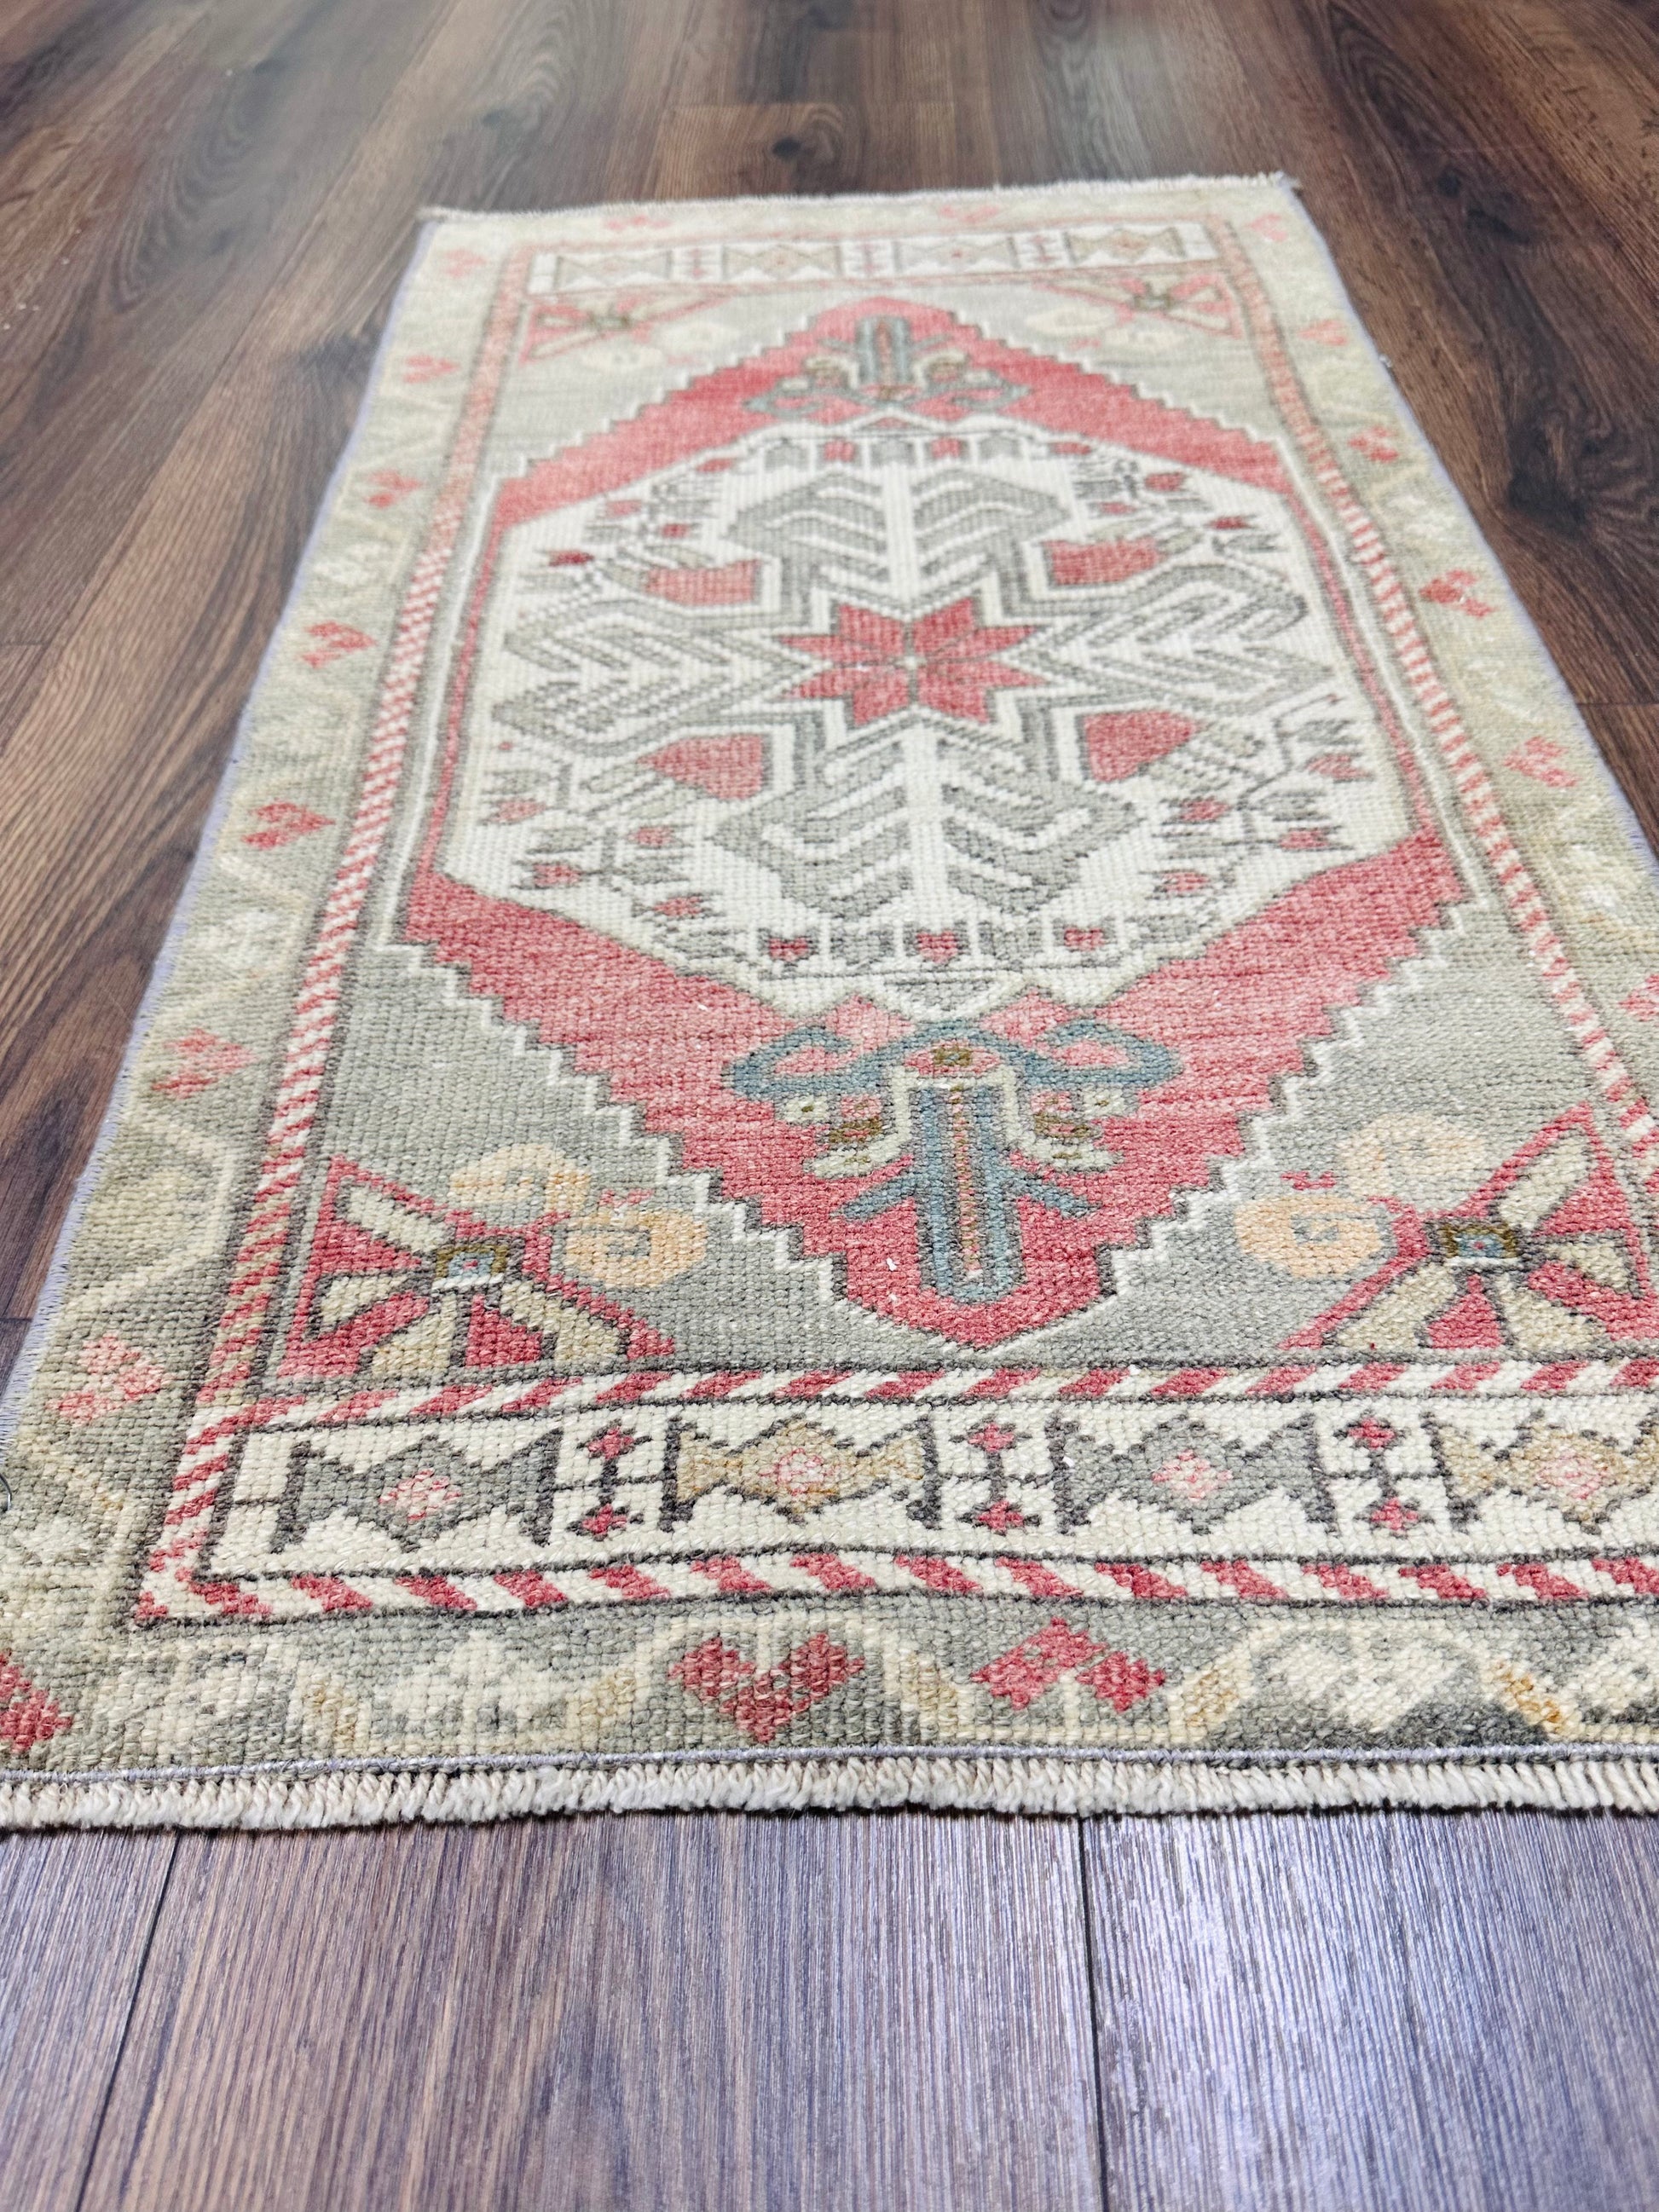 19x35 hand knotted, wool on wool, vintage Turkish mini rug